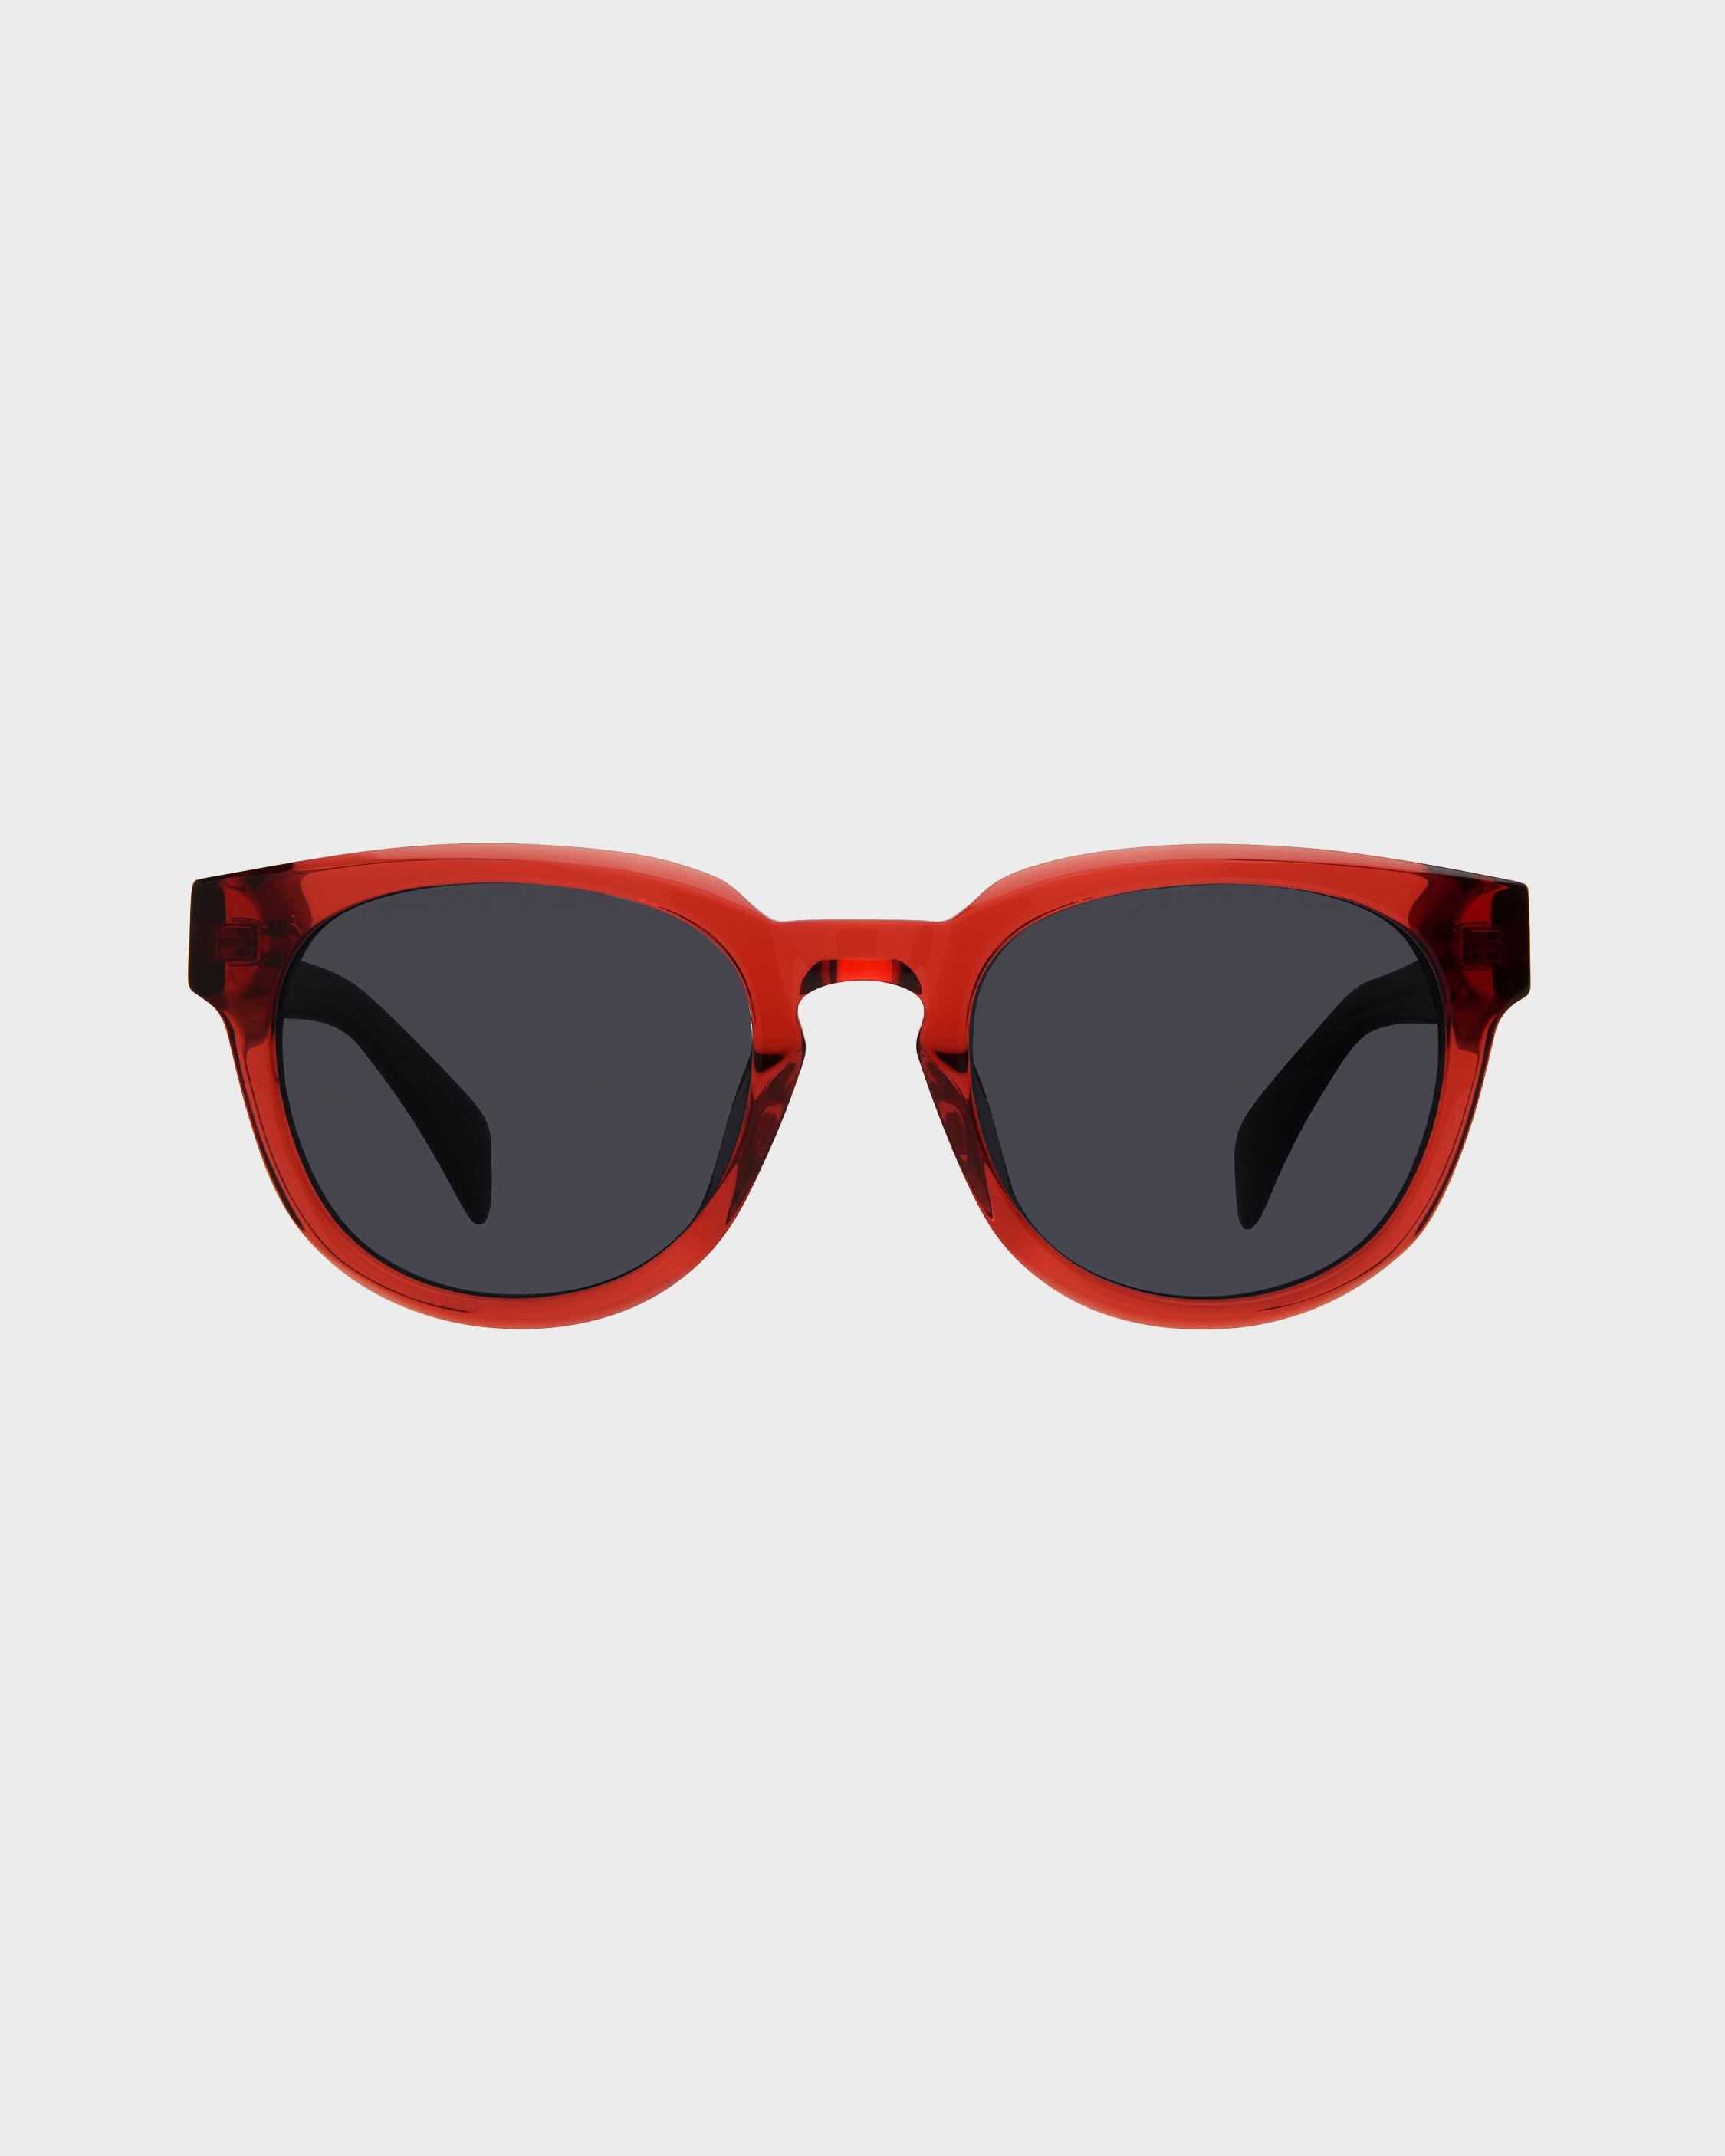 Slayton
Oval Sunglasses - 2